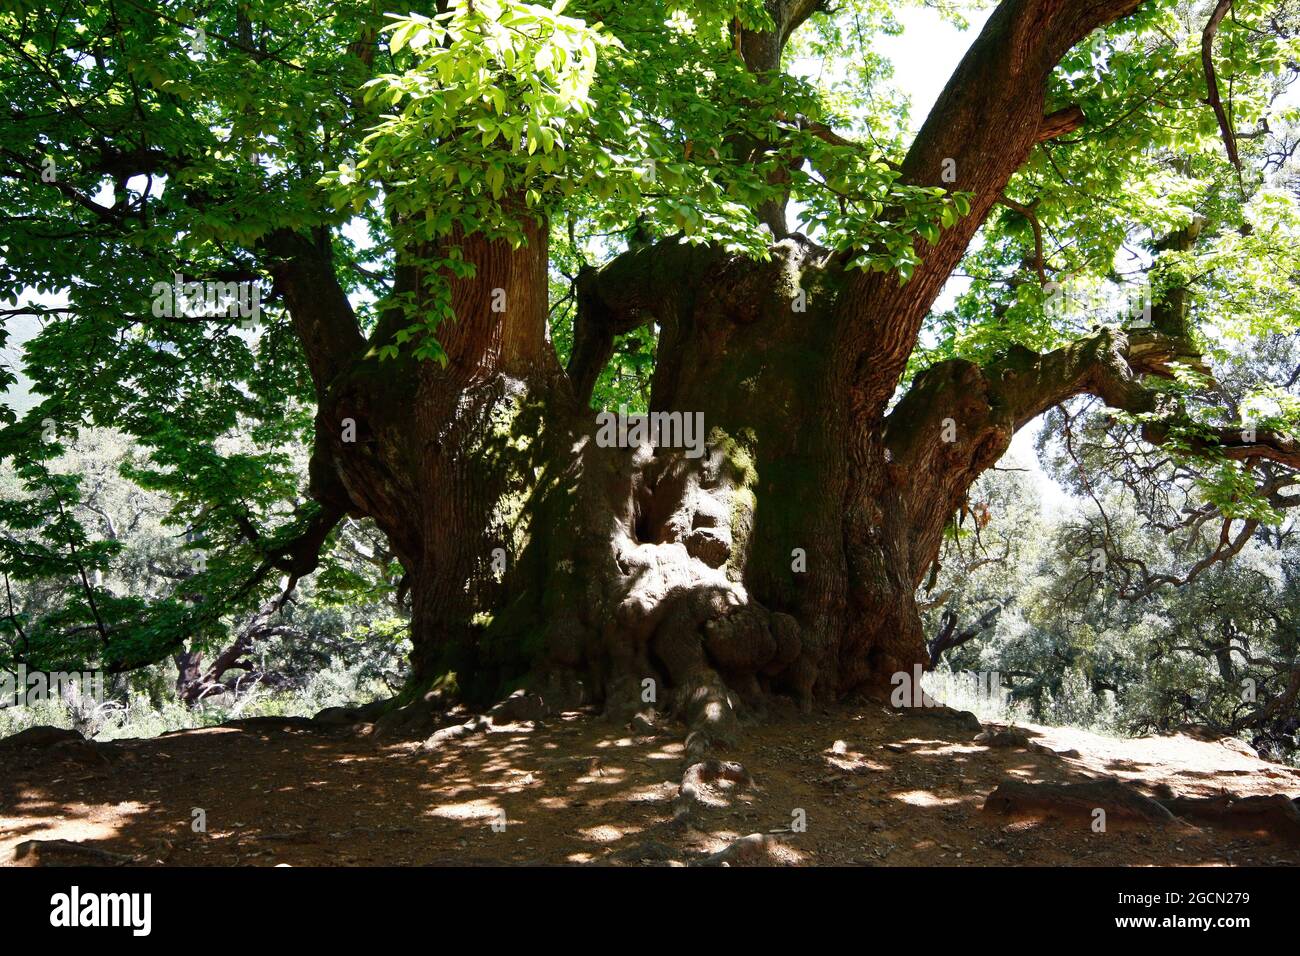 Il castagno santo di Istan (Castaño Santo) nella provincia di Malaga è un albero di oltre mille anni, unico nel suo genere Foto Stock